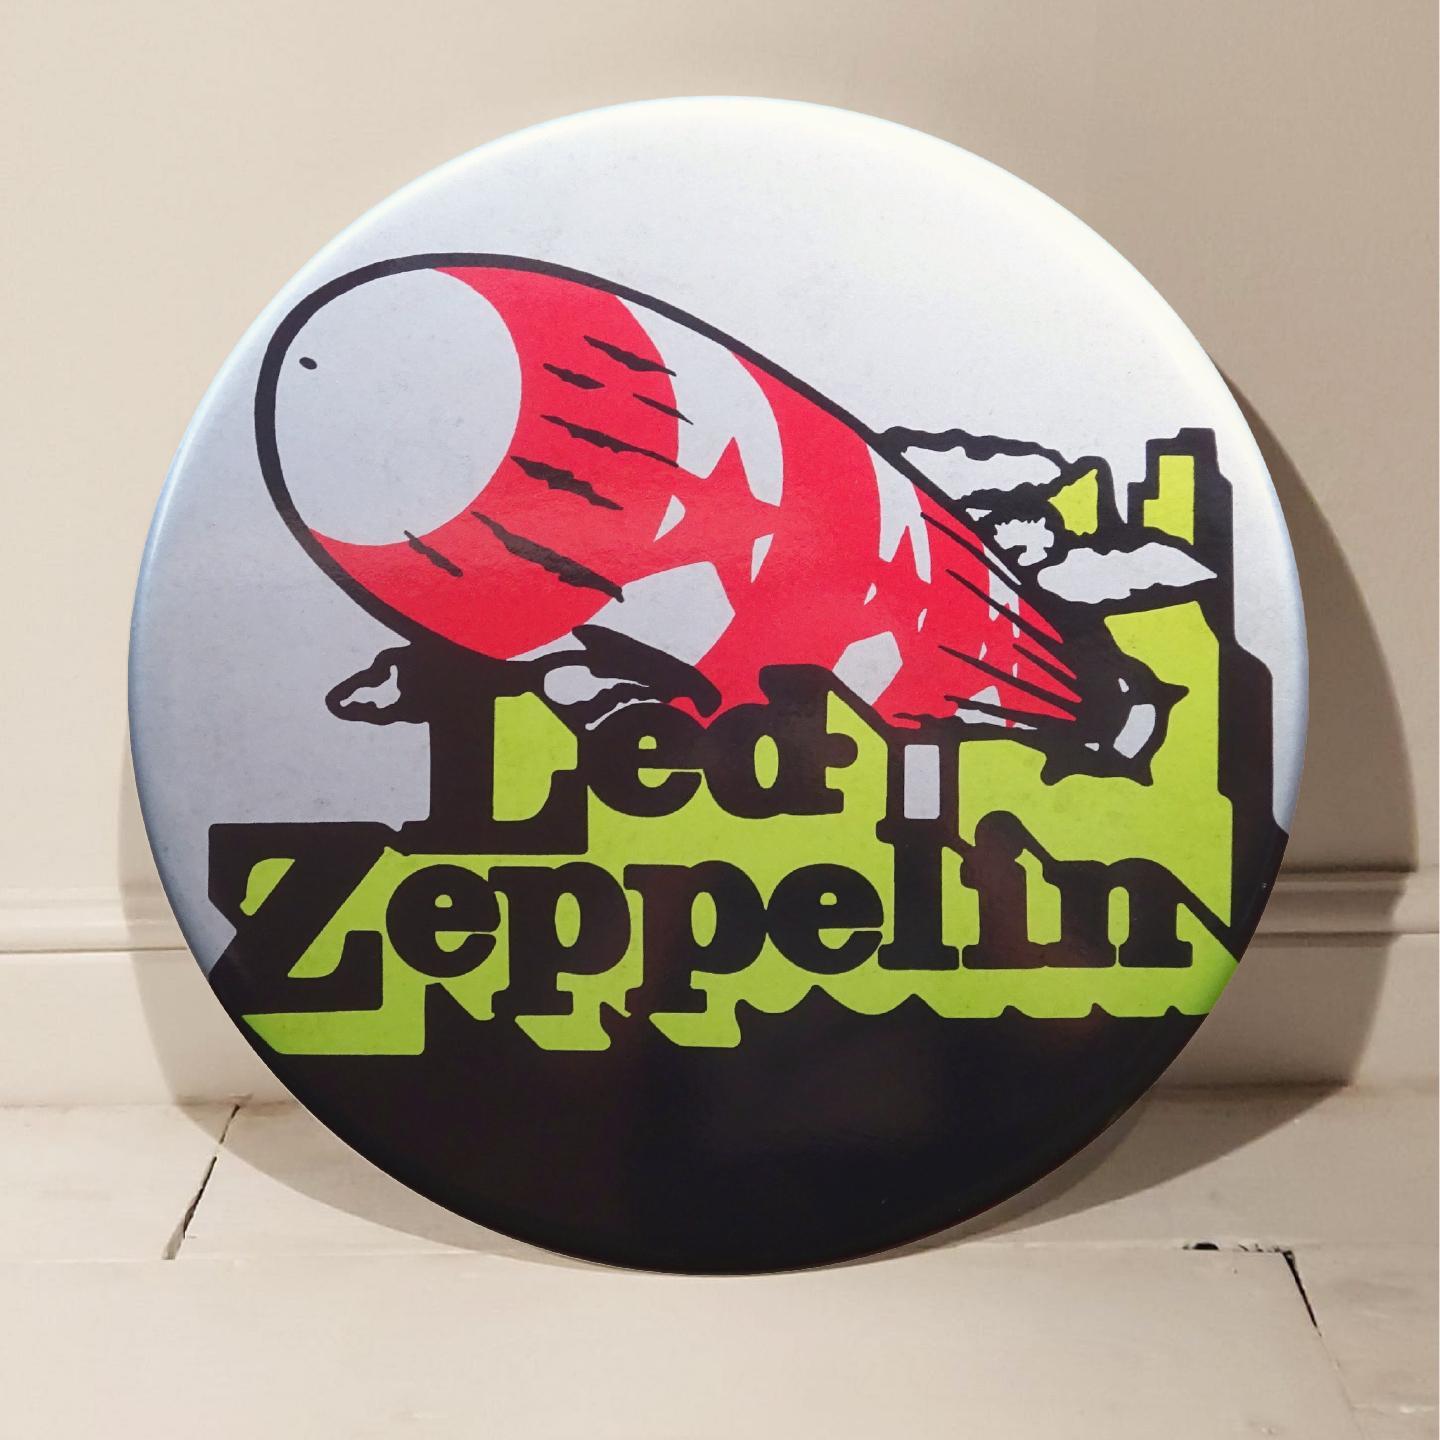 Led Zeppelin (métallique) bouton vintage géant fait main en 3D - Art de Tony Dennis